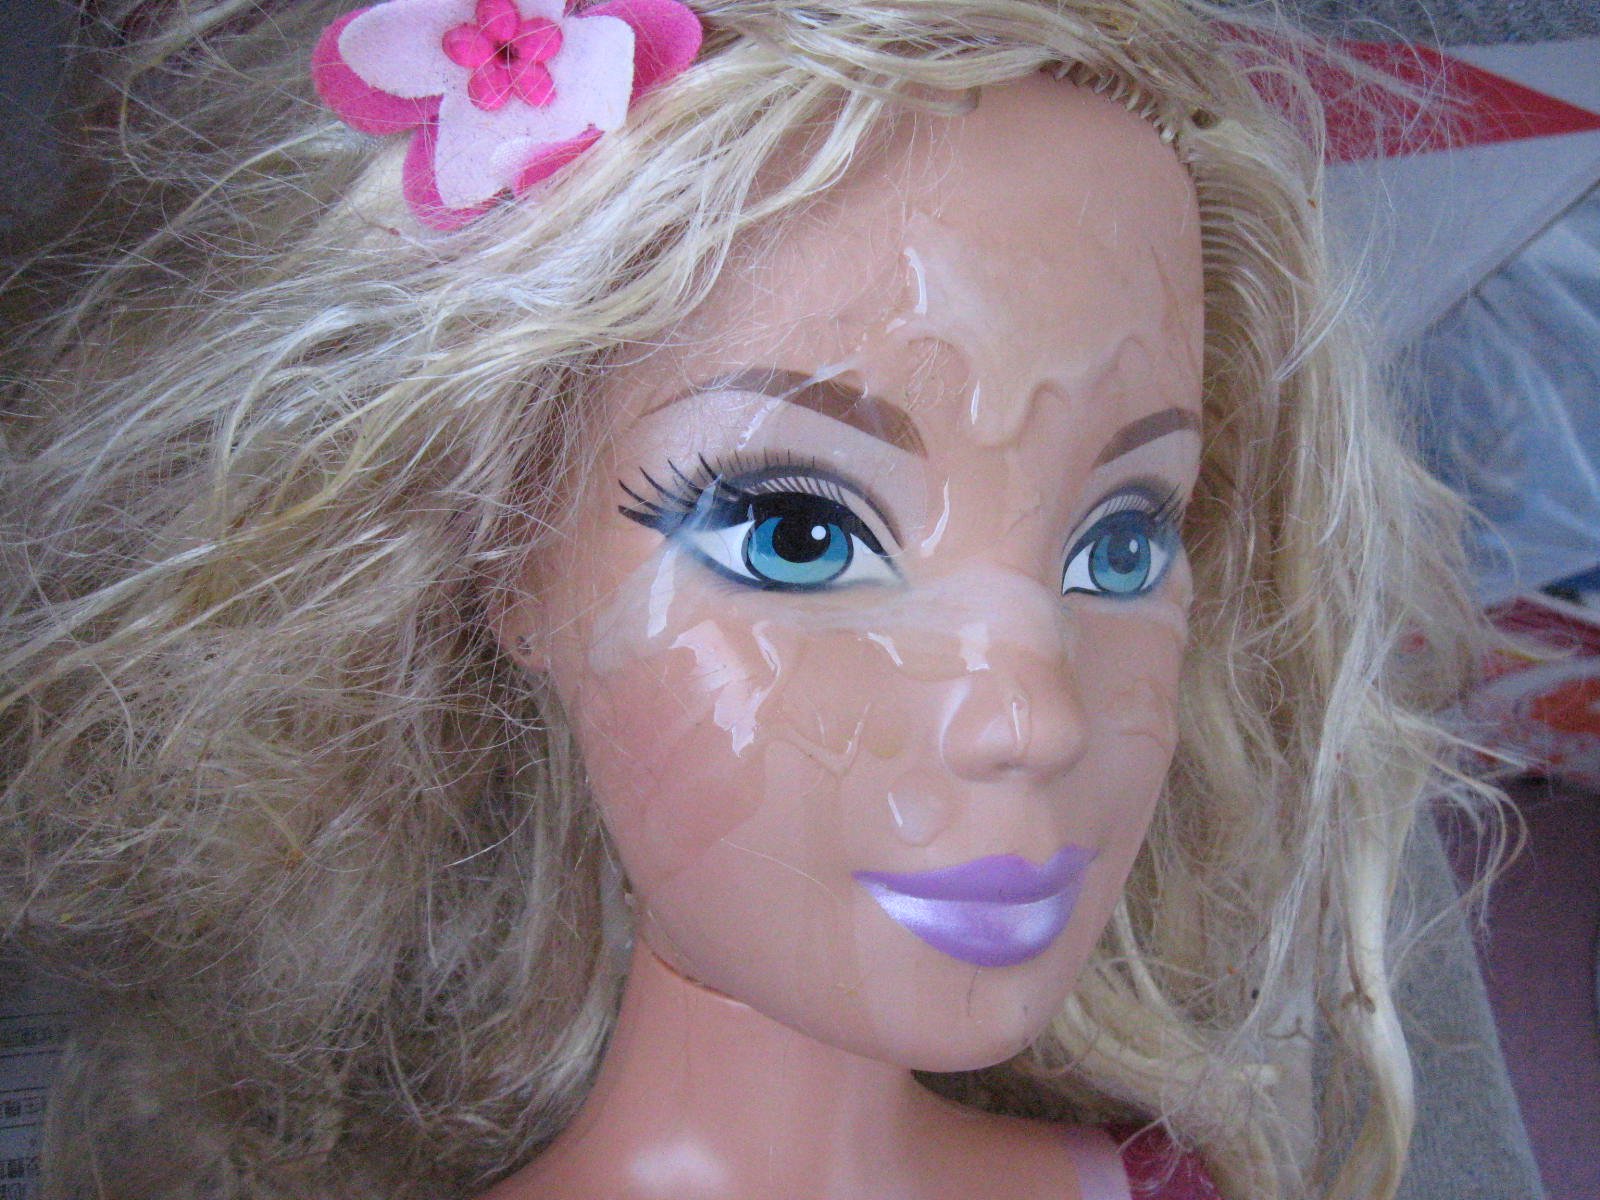 “Barbie Facials #Cum #Barbie #Facials #CumShots #Porn #CumShotCrazy” .